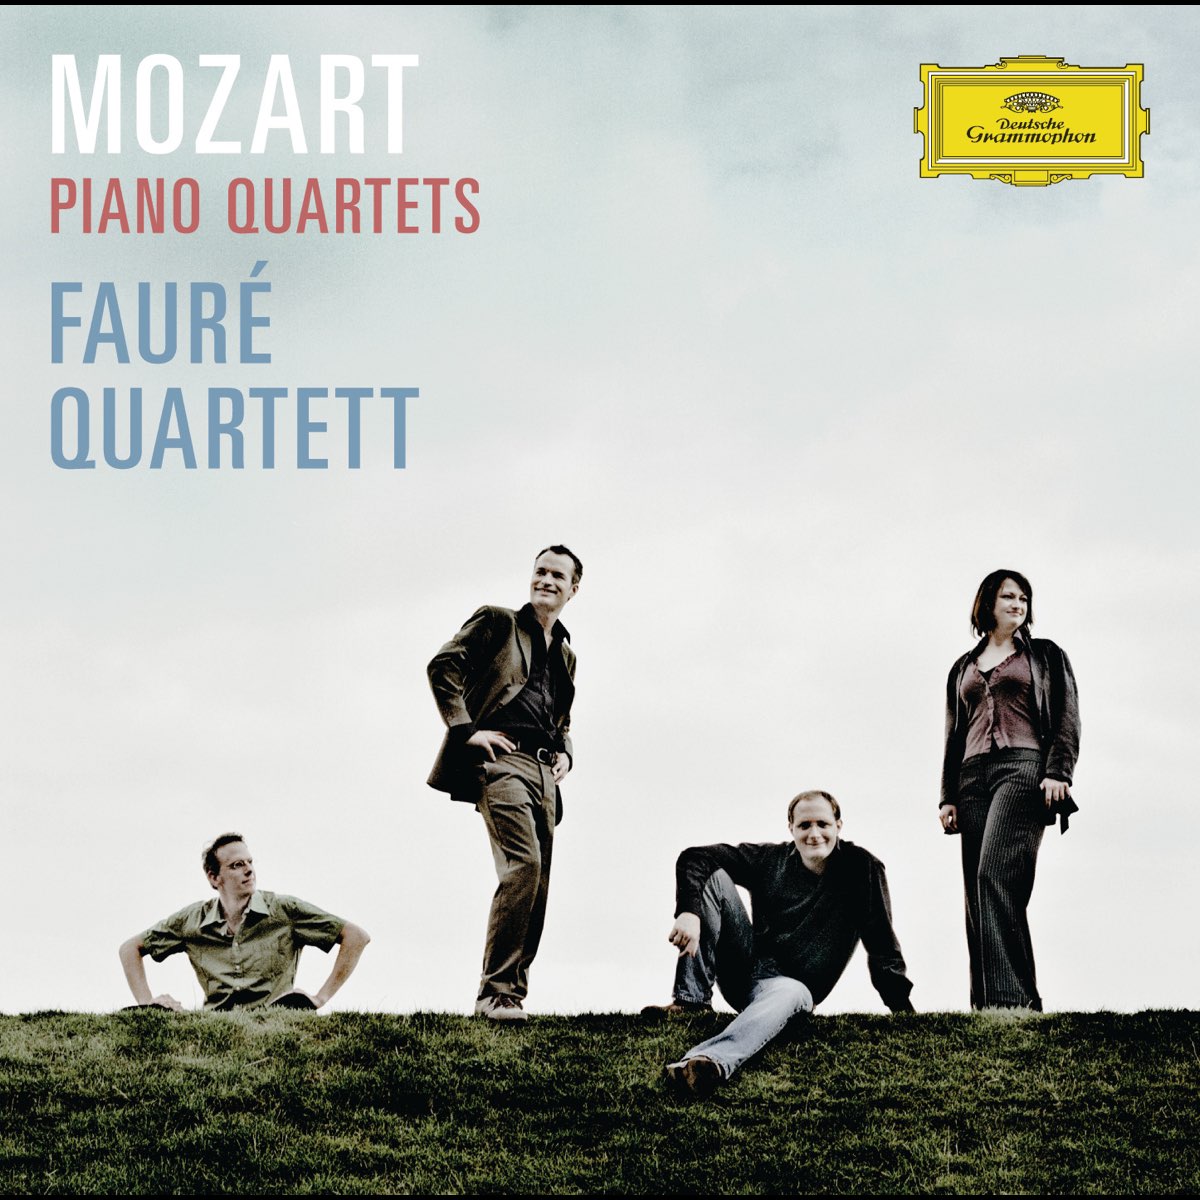 Mozart: Piano Quartets K. 478 & K. 493 by Fauré Quartett on Apple 